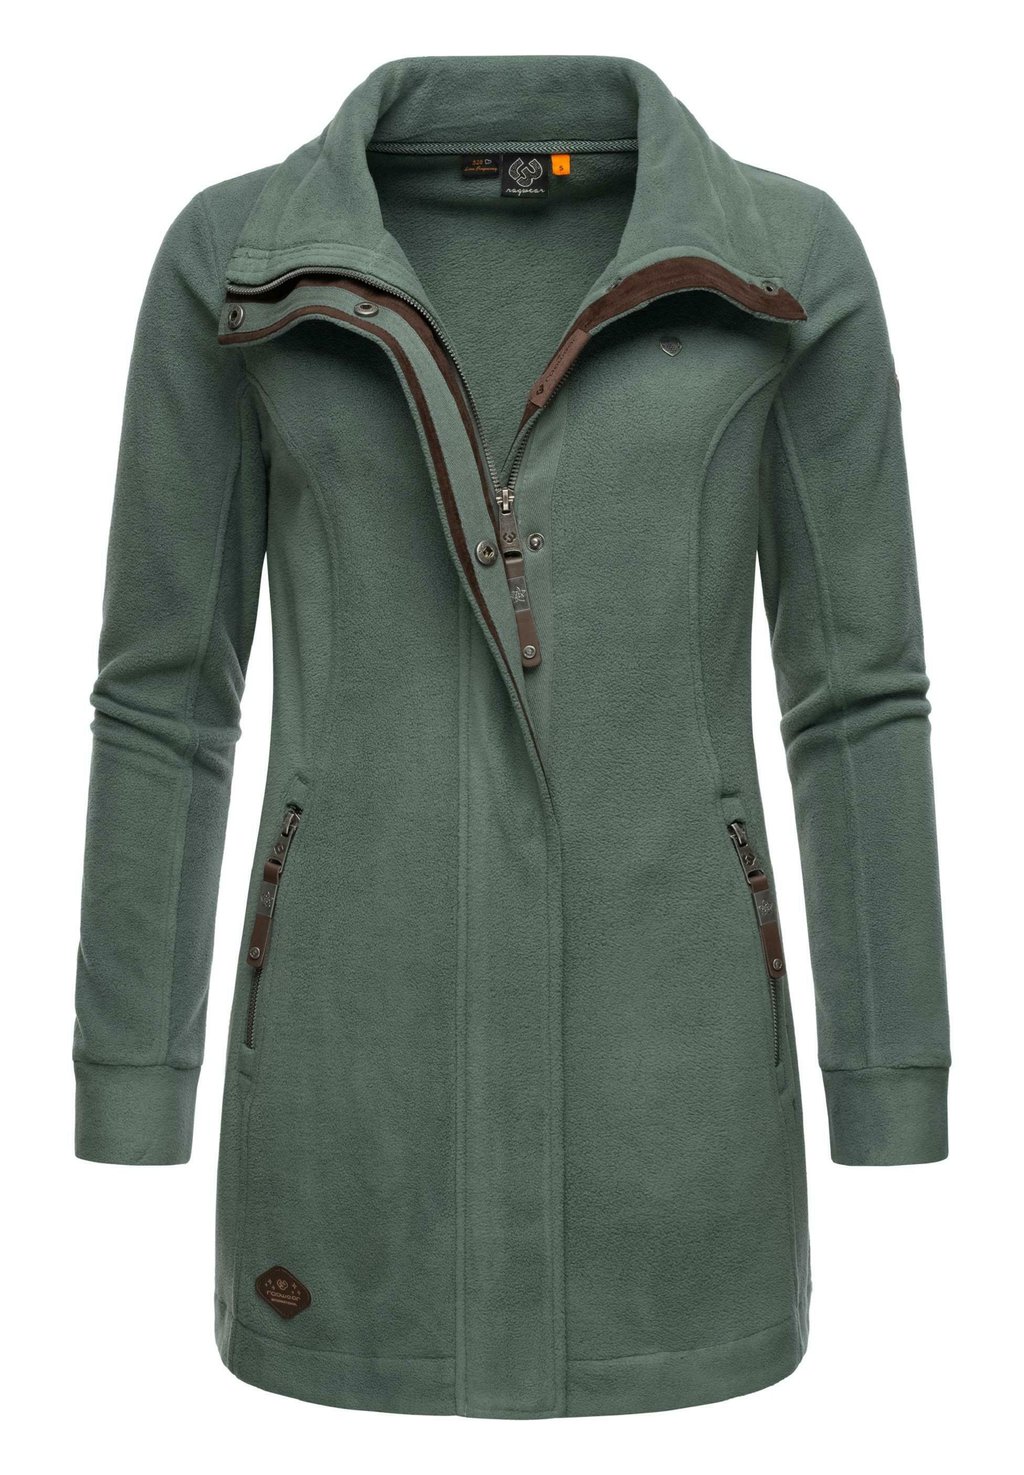 Флисовая куртка Ragwear, сосновый зеленый